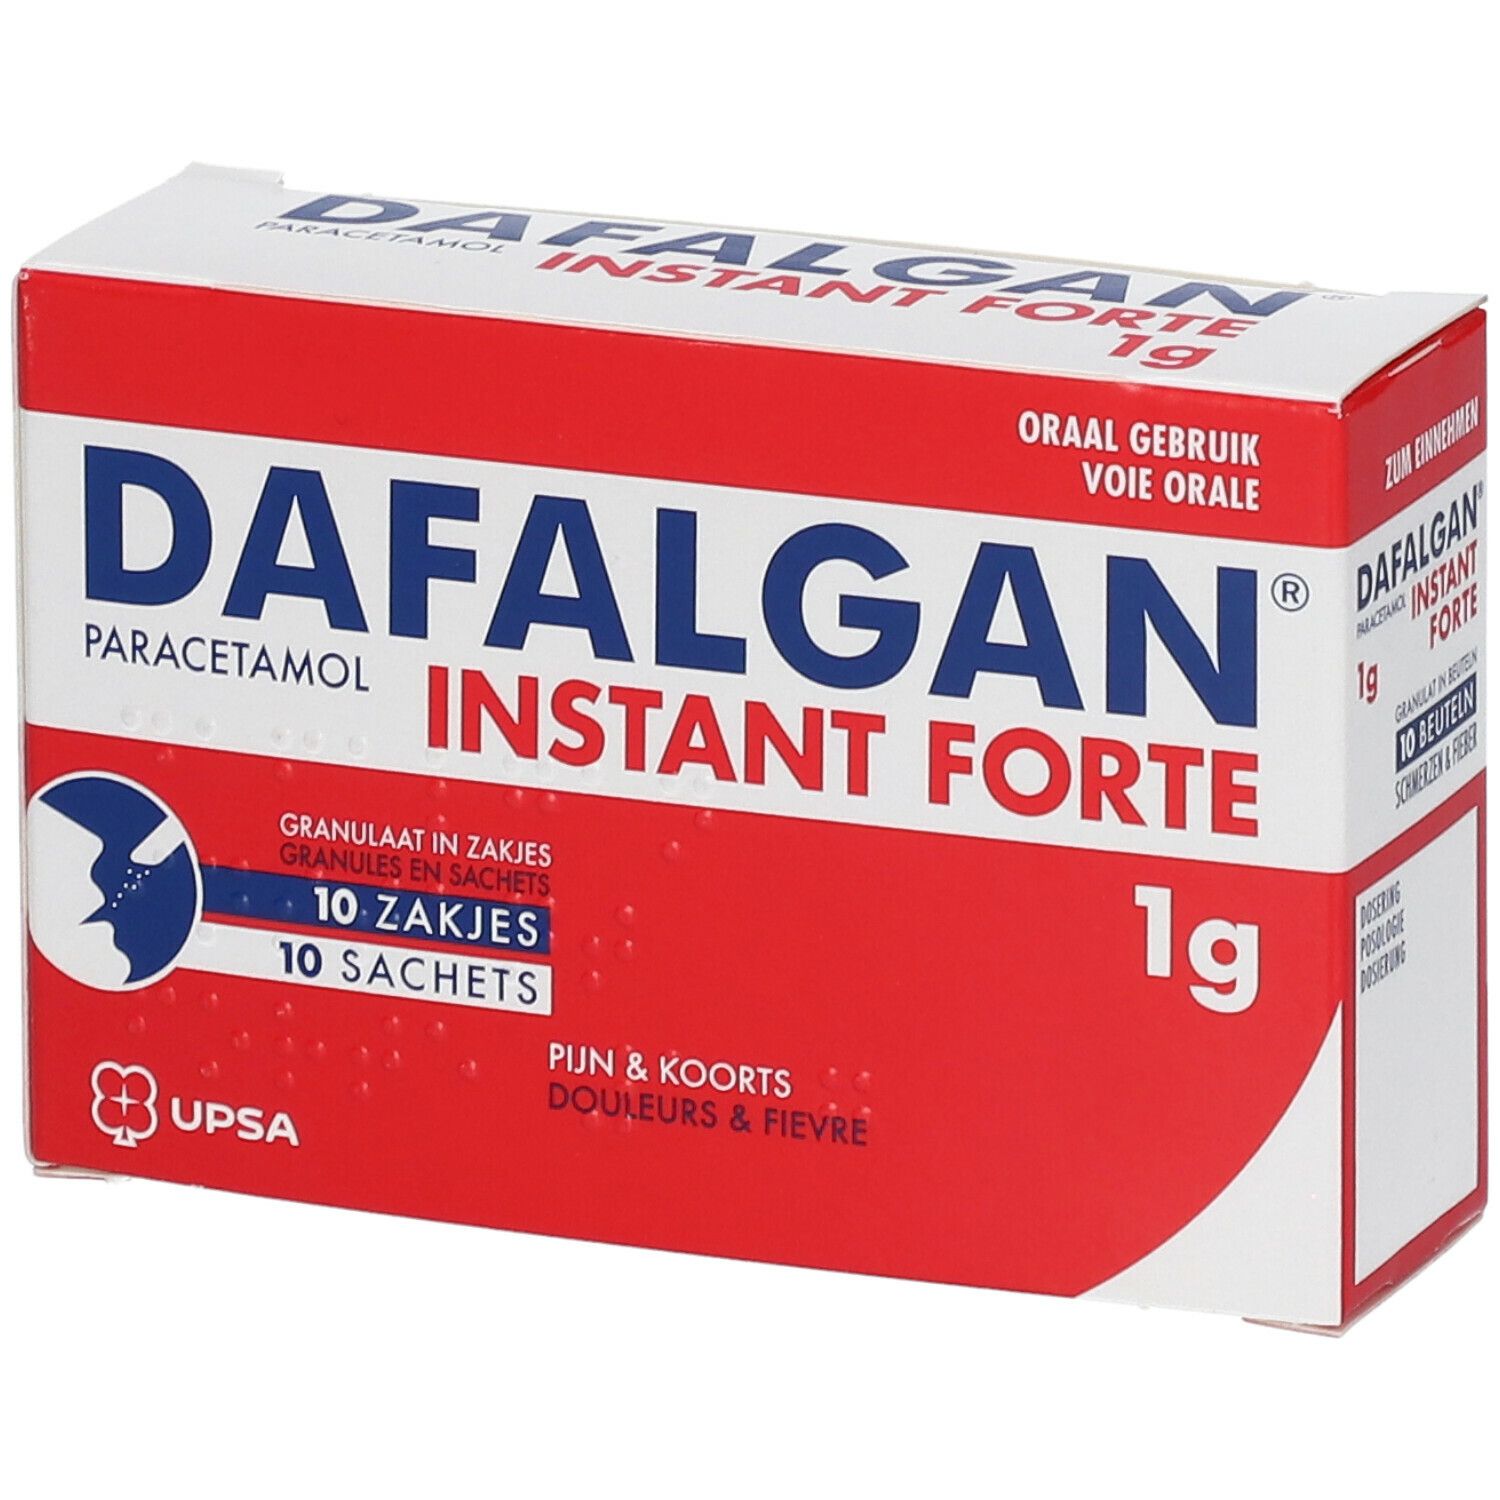 Dafalgan Instant Forte 1g